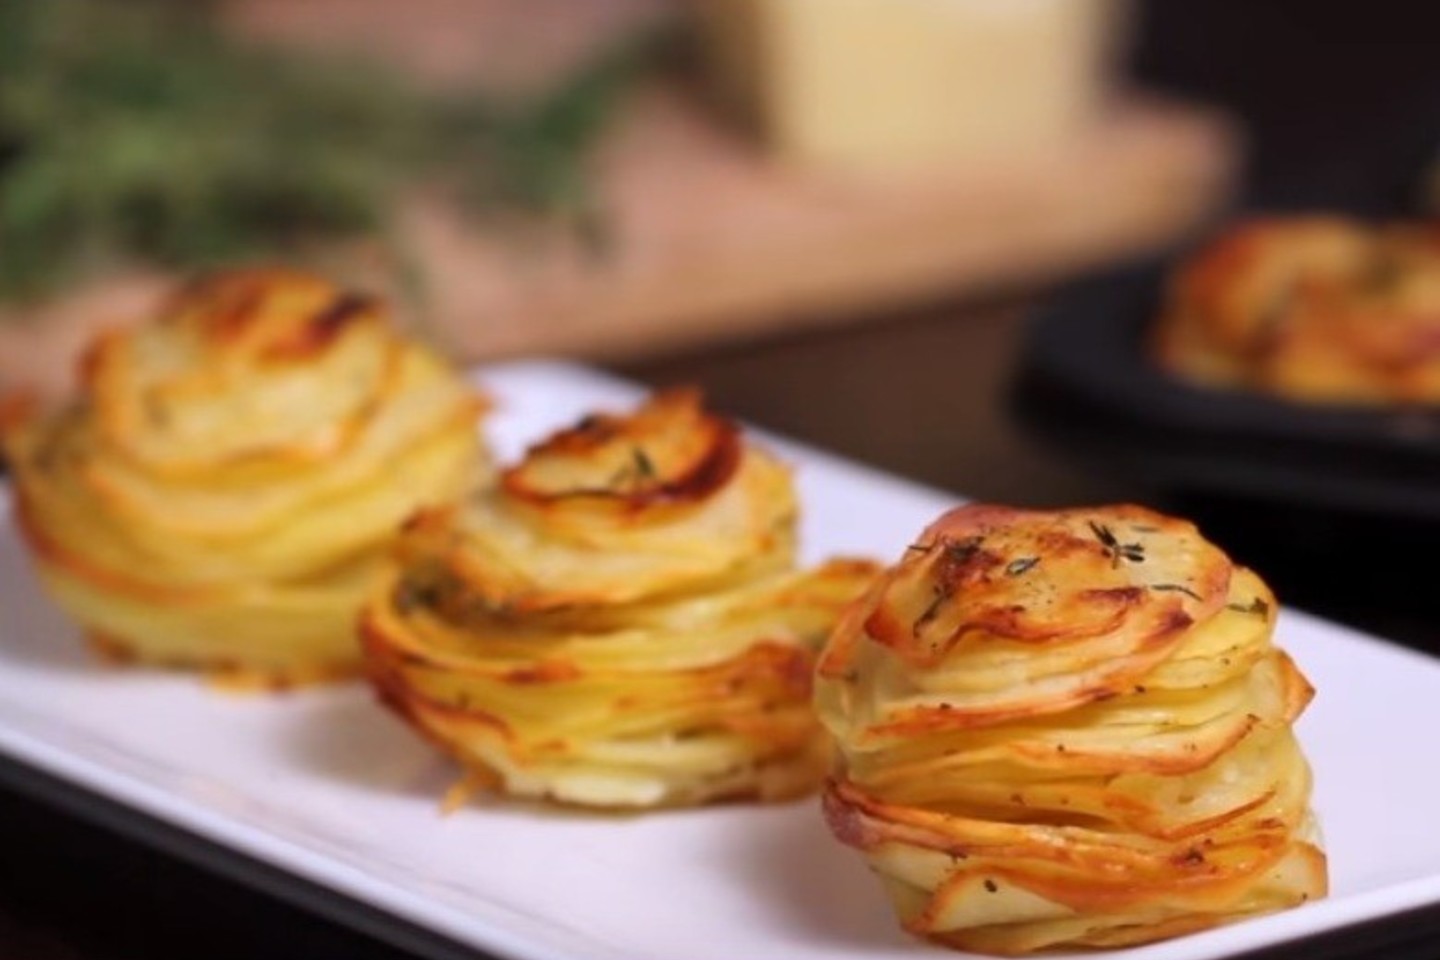 Bulvių bokšteliai.<br>Stopkadras iš Youtube/Home Cooking Adventures.